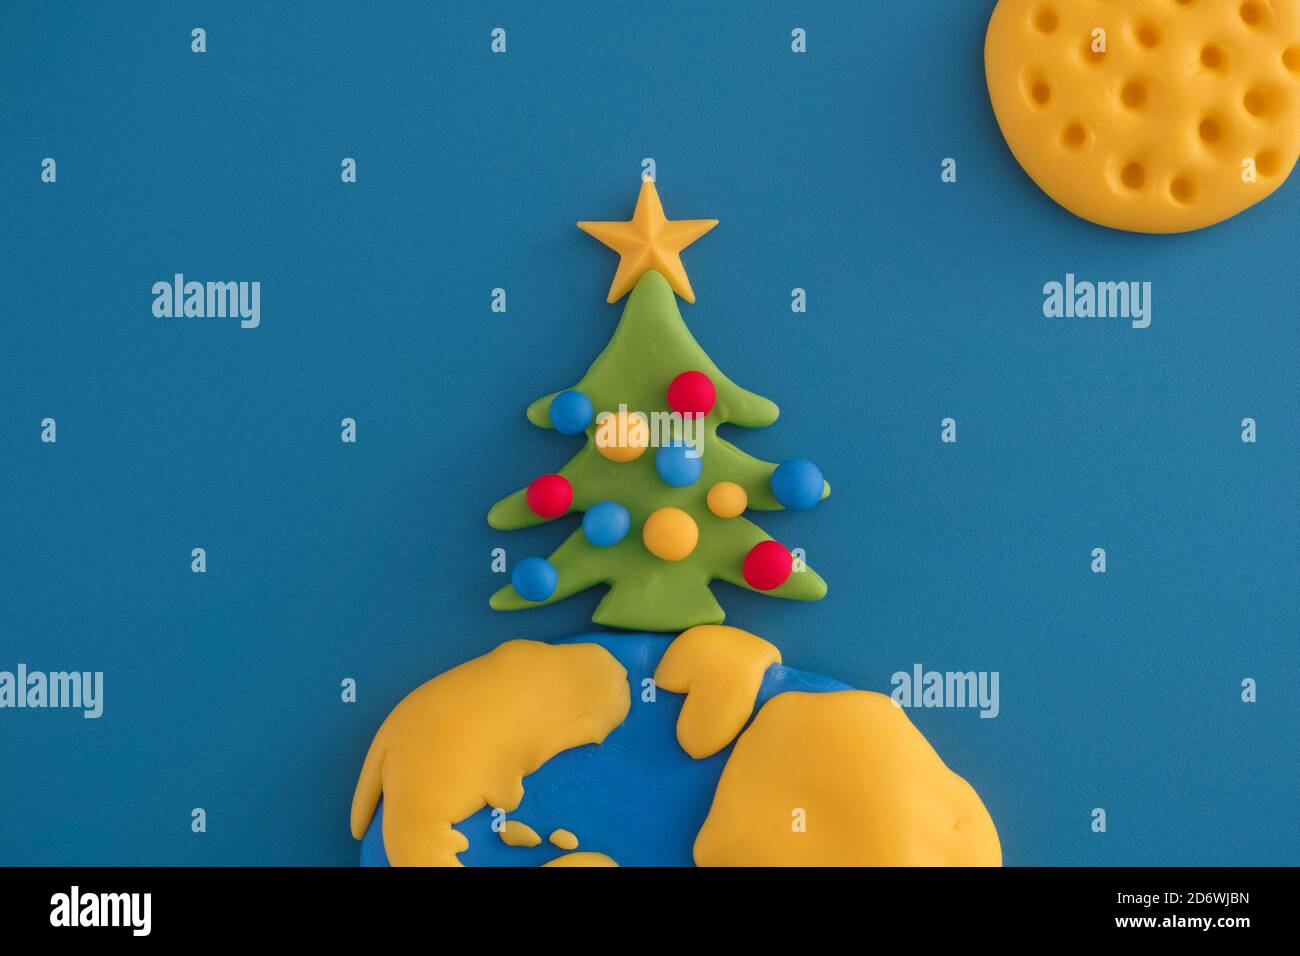 Un árbol de Navidad en la parte superior del planeta Tierra. La escena está hecha de arcilla polimérica. Foto de stock